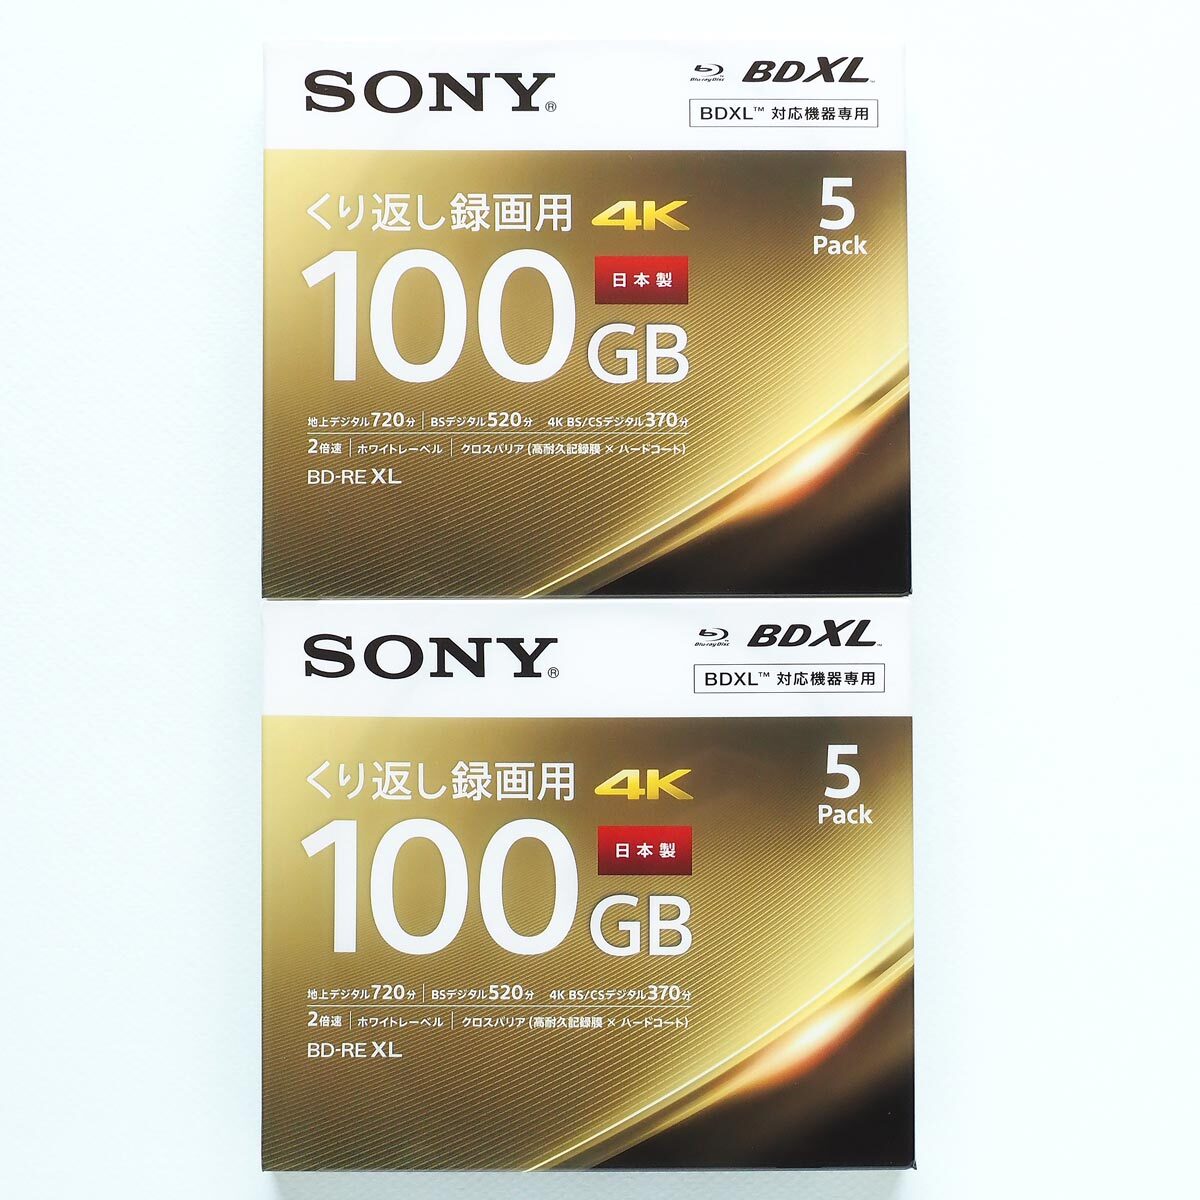 新品 SONY ソニー Blu-ray ブルーレイ BDXL BD-RE XL 100GB 合計10枚 【5BNE3VEPS2】の画像1